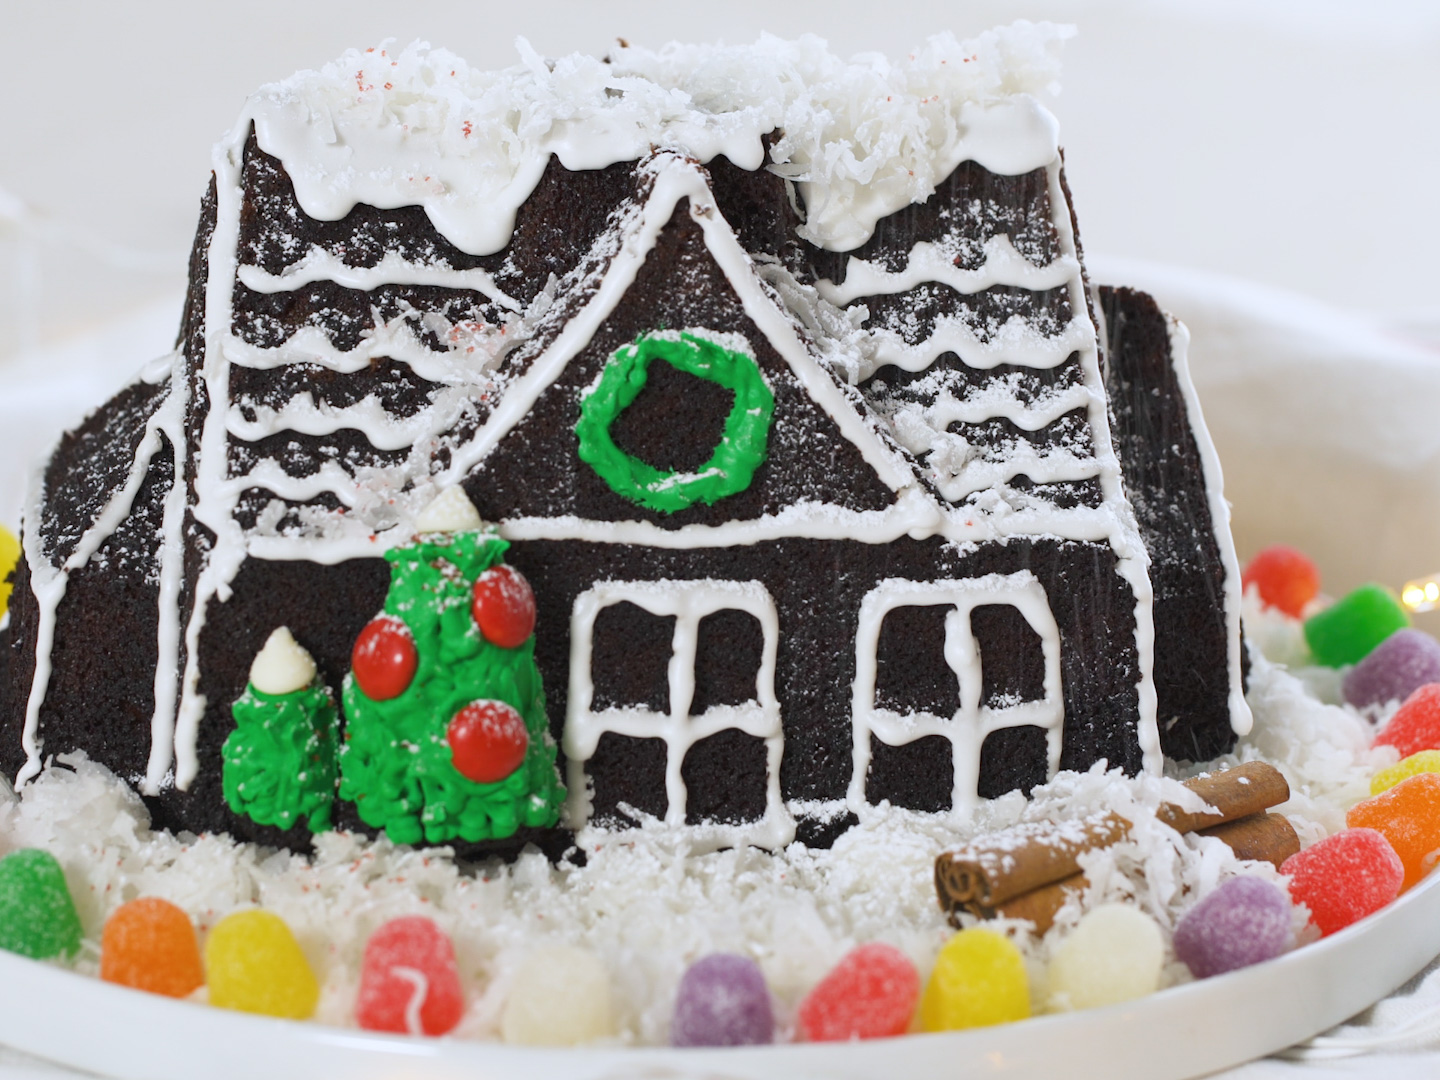 https://www.foodnetwork.com/content/dam/images/food/fullset/2017/11/29/0/FNK_Gingerbread-House-Cake_s4x3.jpg